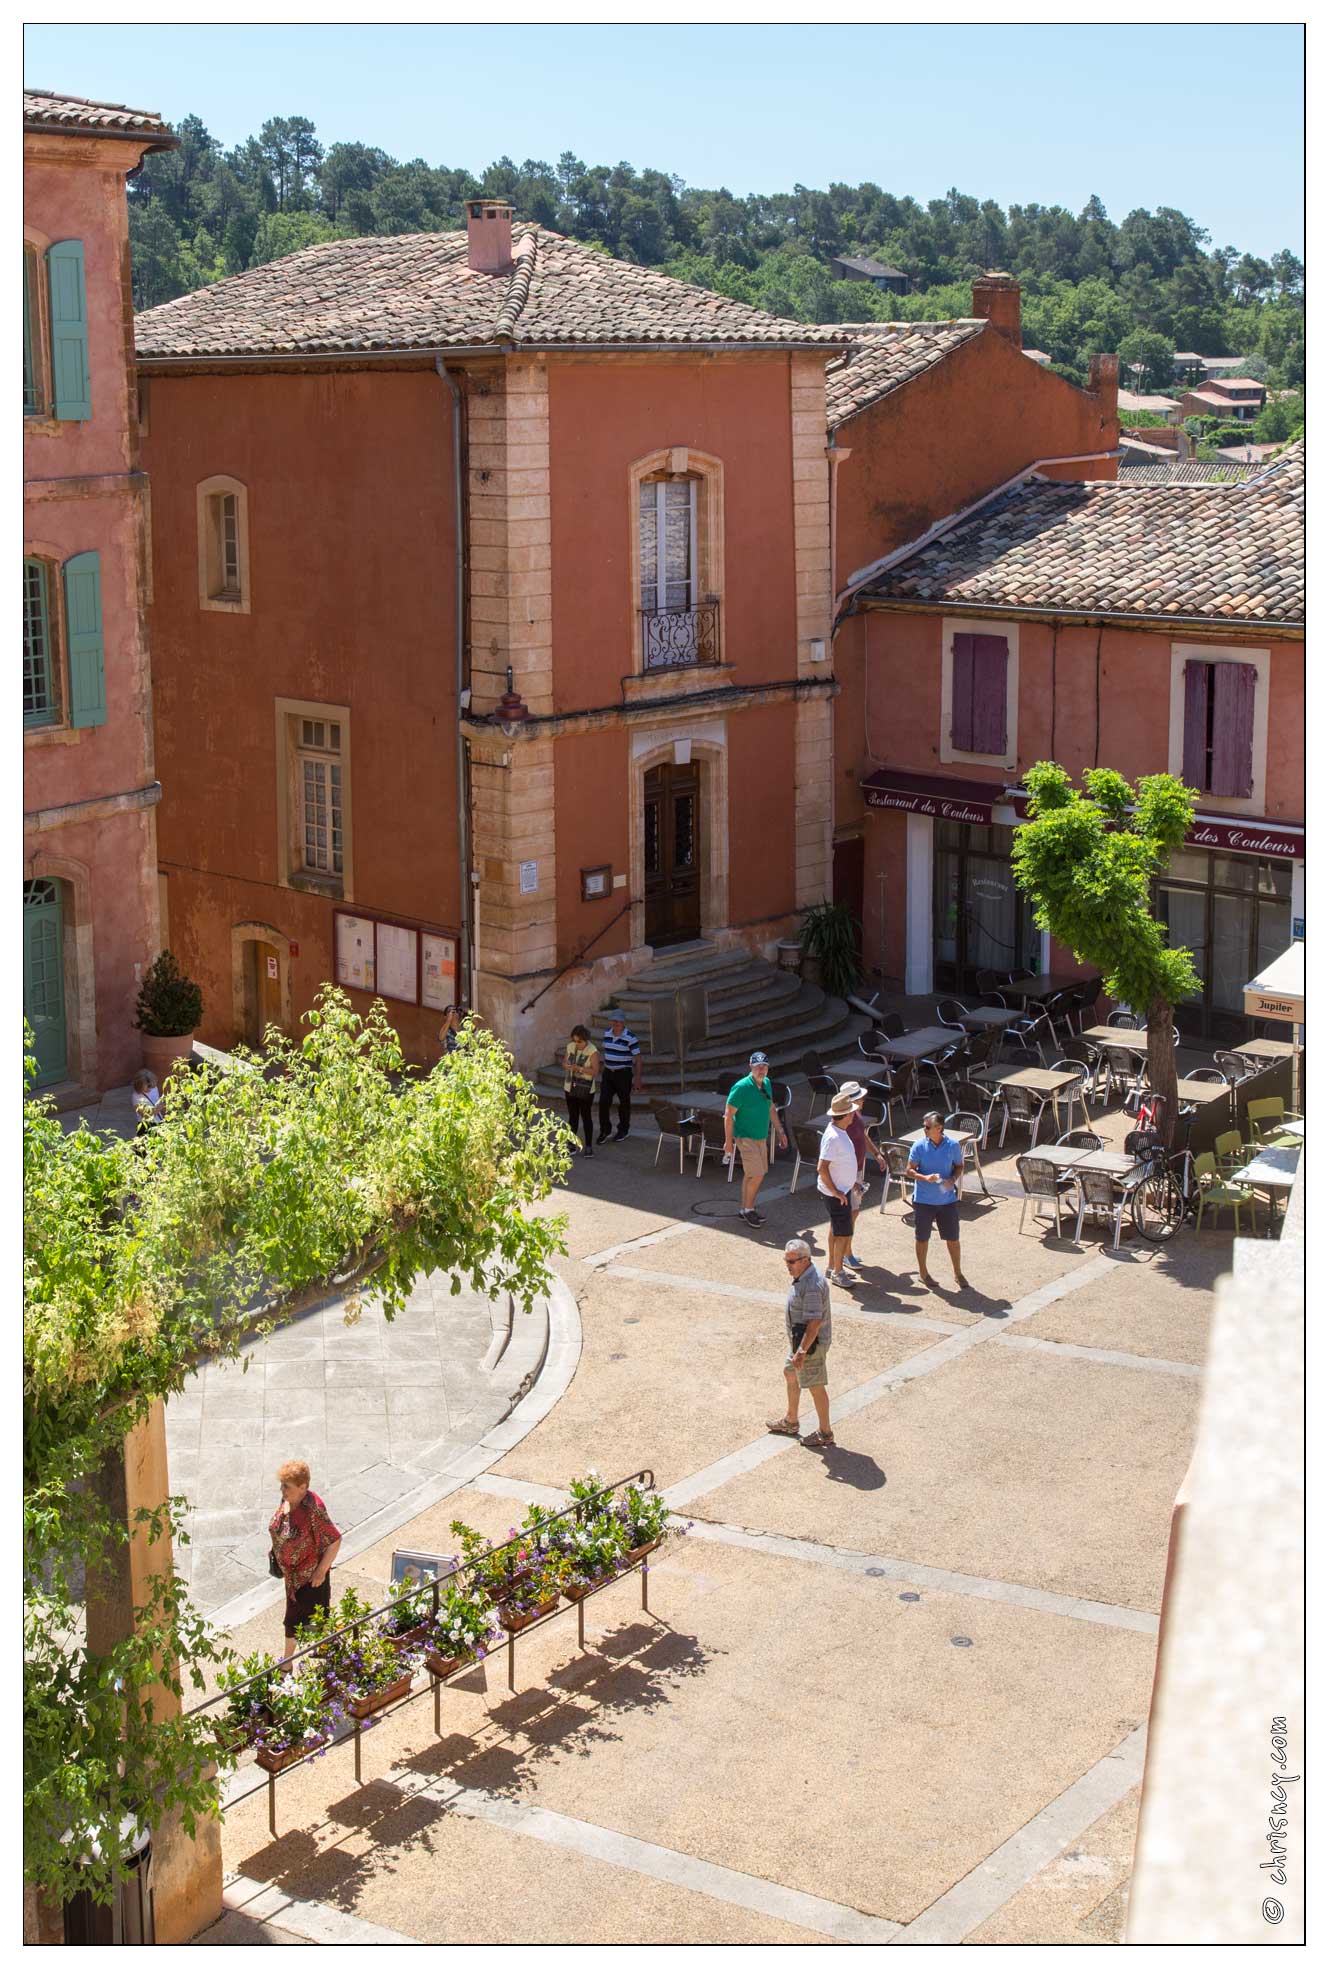 20160608-13_9325-Luberon_Roussillon.jpg